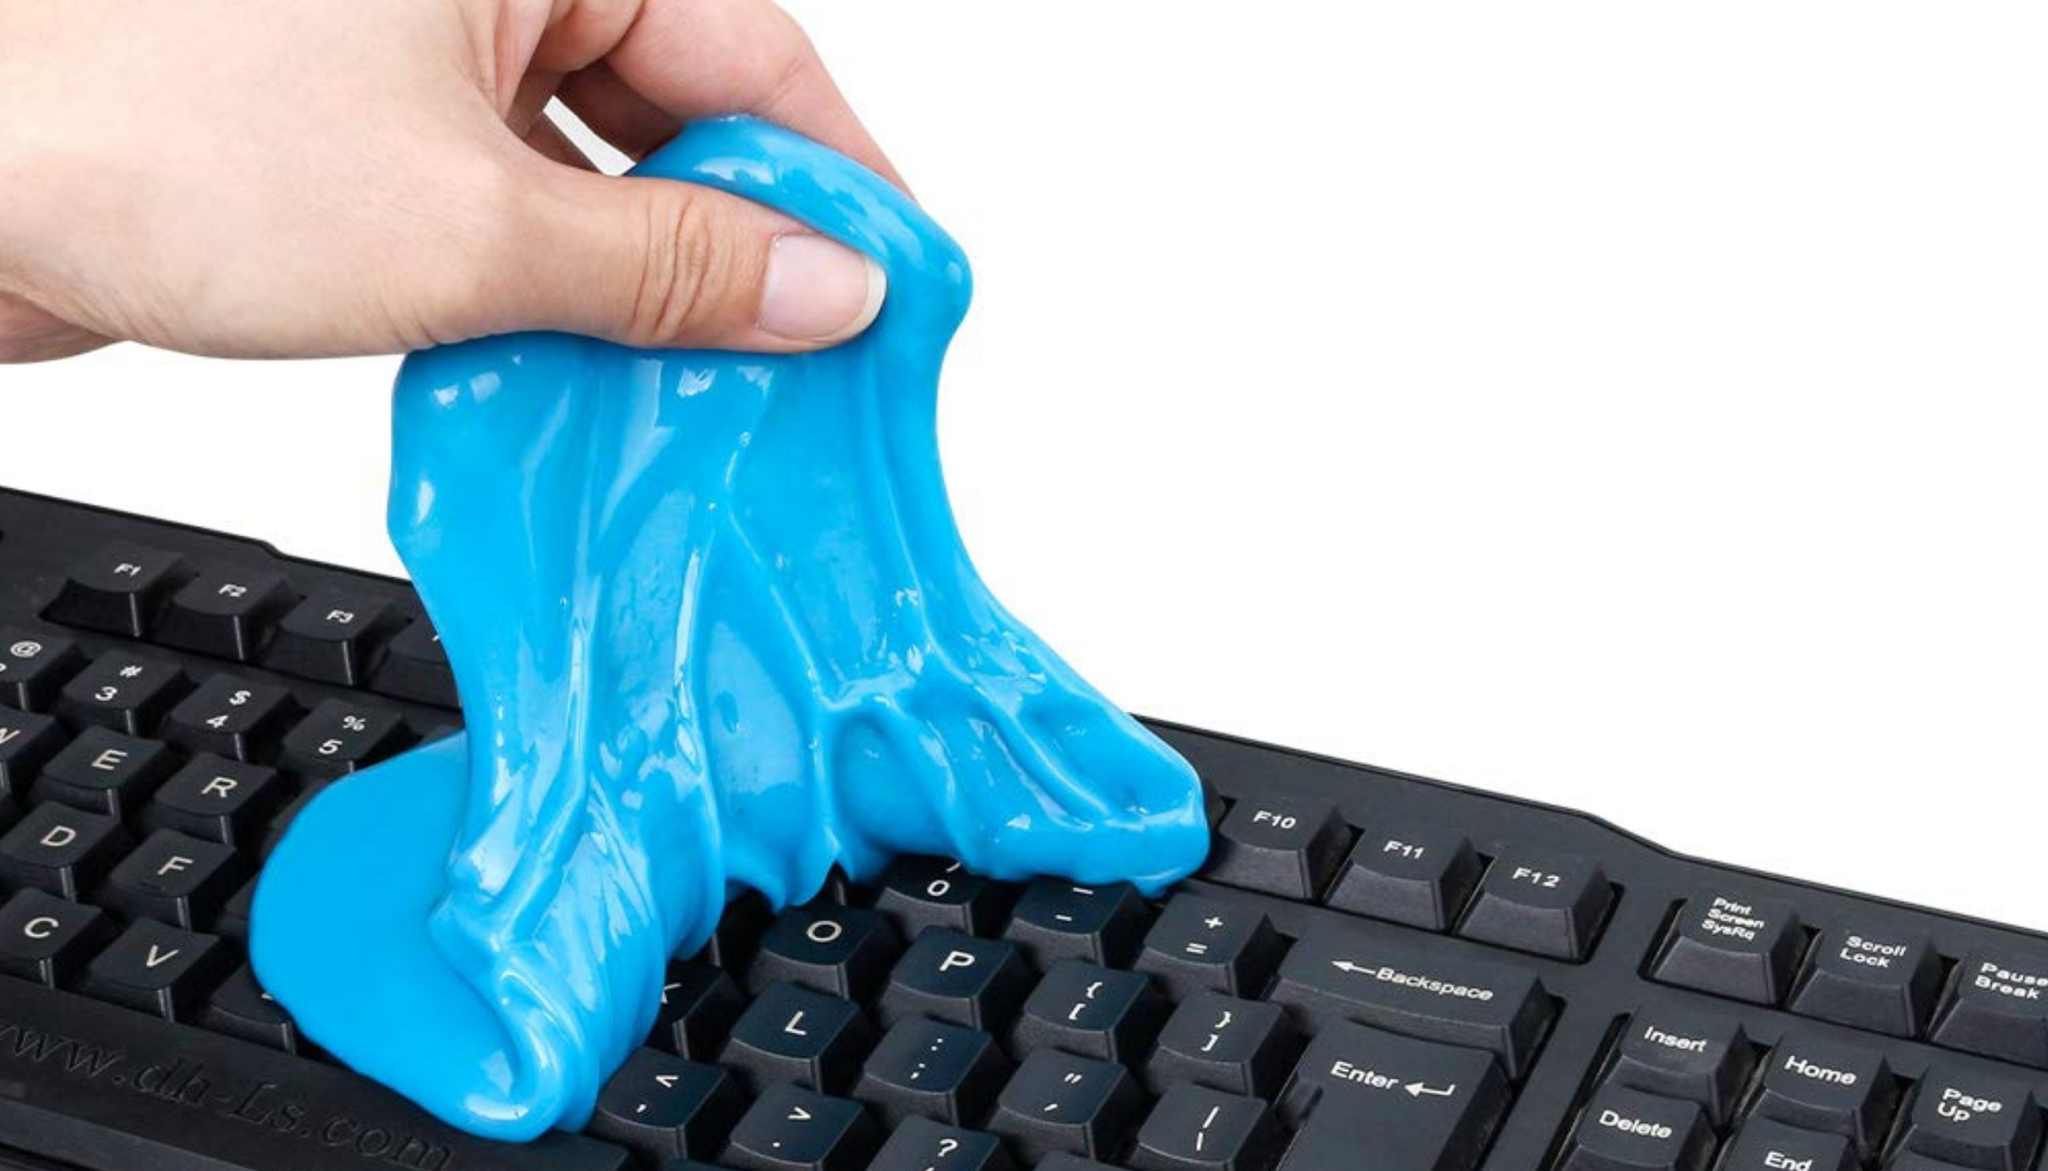 Esta plastilina es el mejor invento para limpiar tu teclado o coche | Gadgets